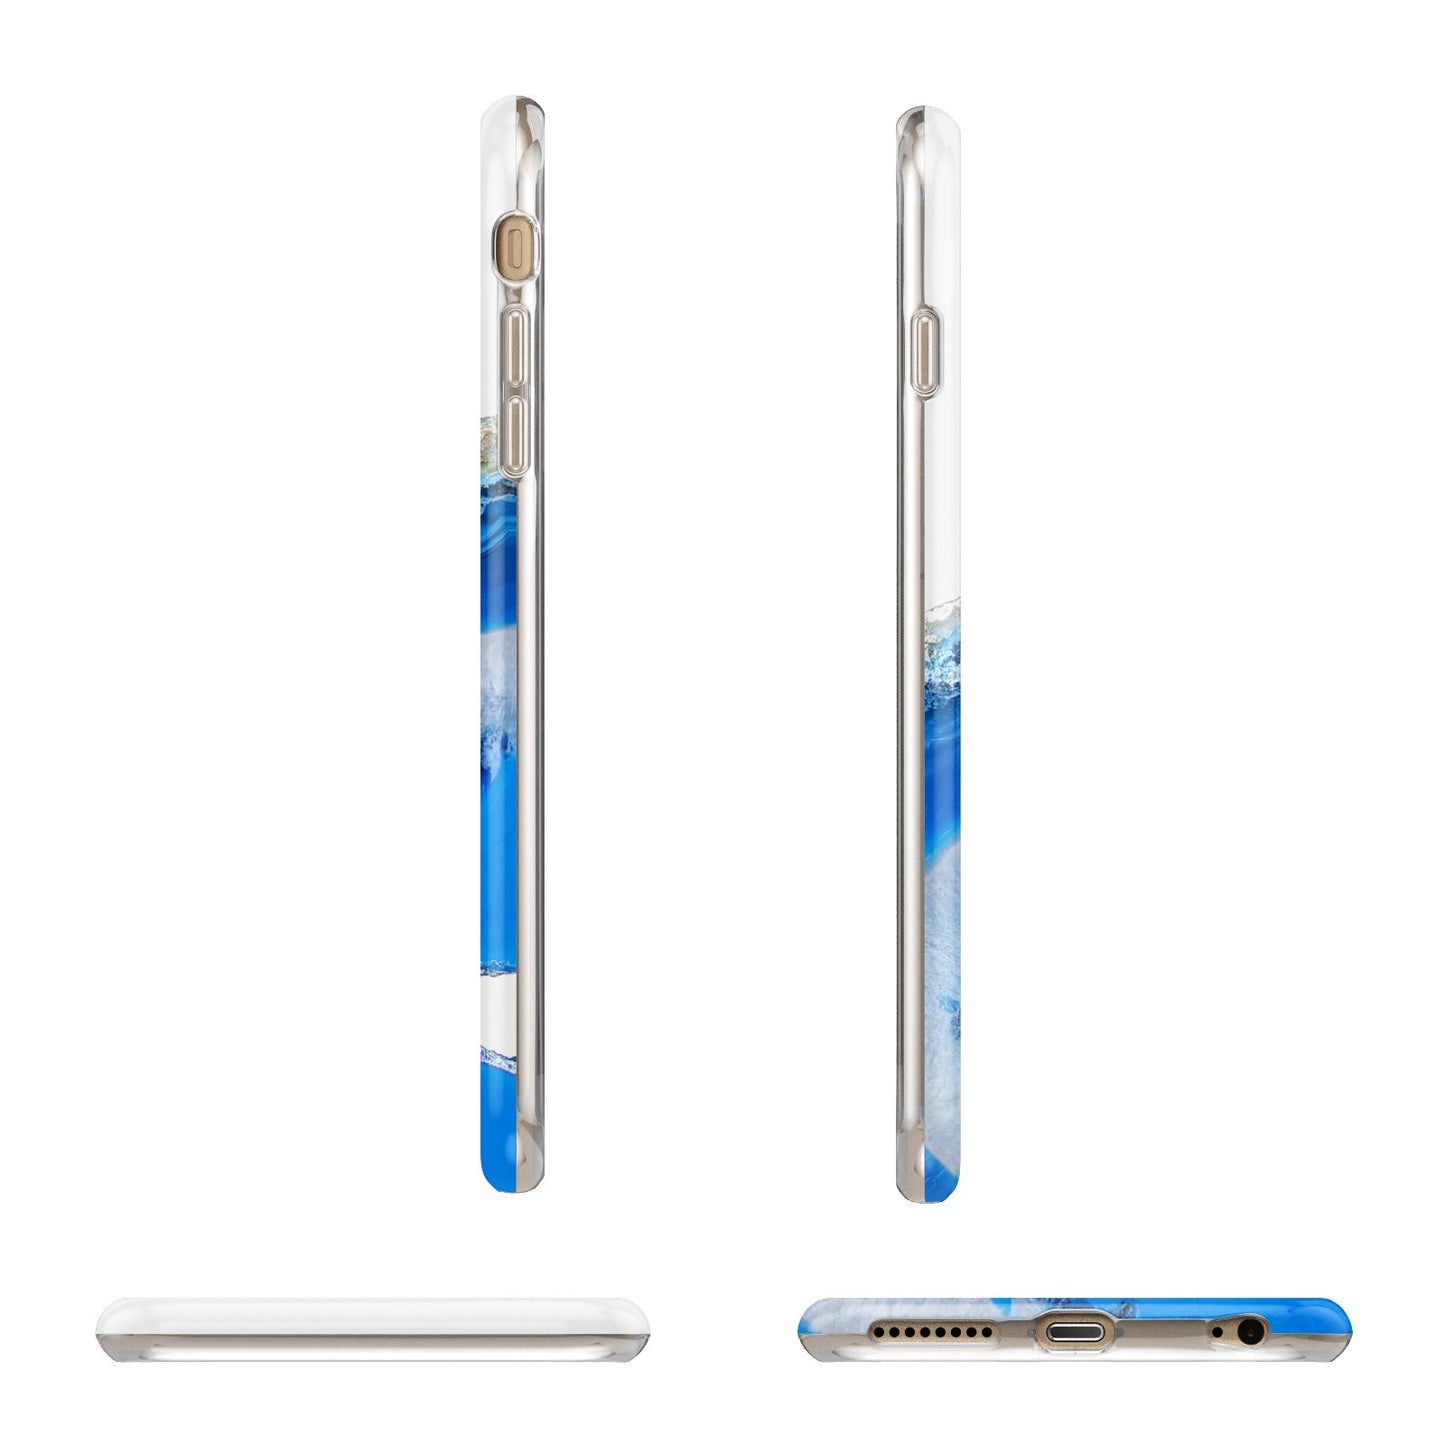 Agate Blue Apple iPhone 6 Plus 3D Wrap Tough Case Alternative Image Angles